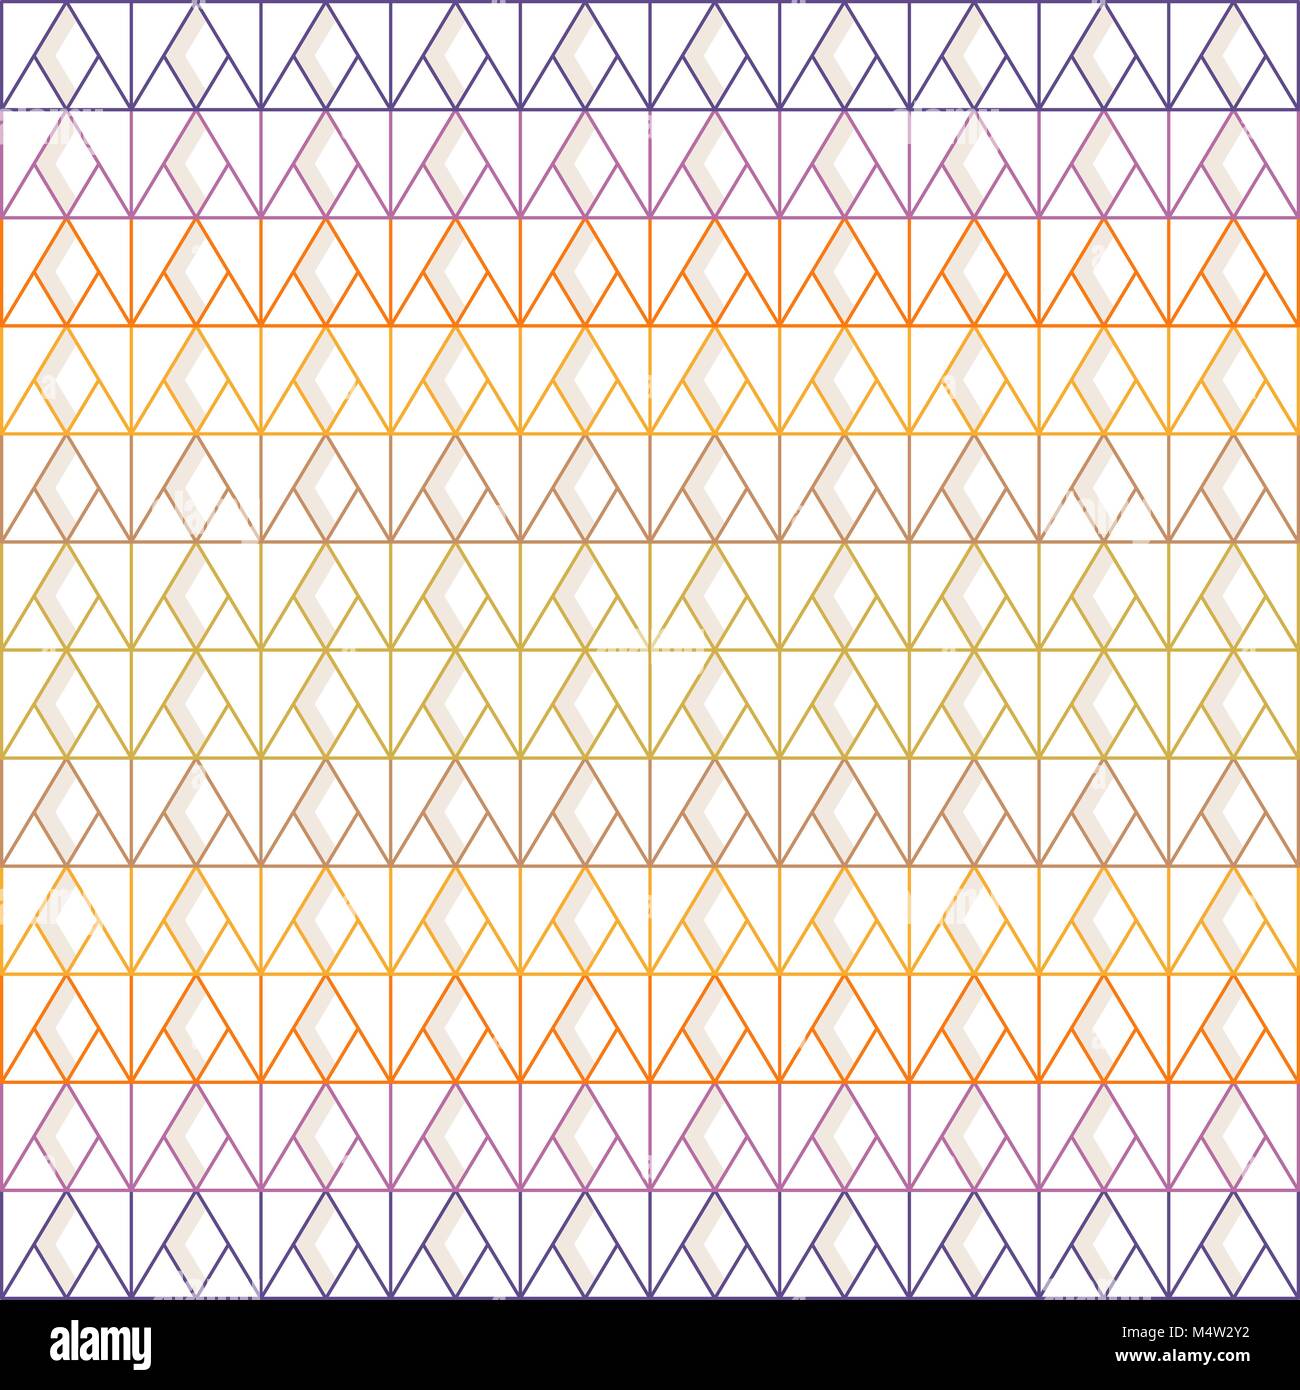 Nahtlose Dreieck und rautenmuster von Multi-farbigen Linien mit grauen Schatten auf weißem Hintergrund; Vector Illustration. Stock Vektor